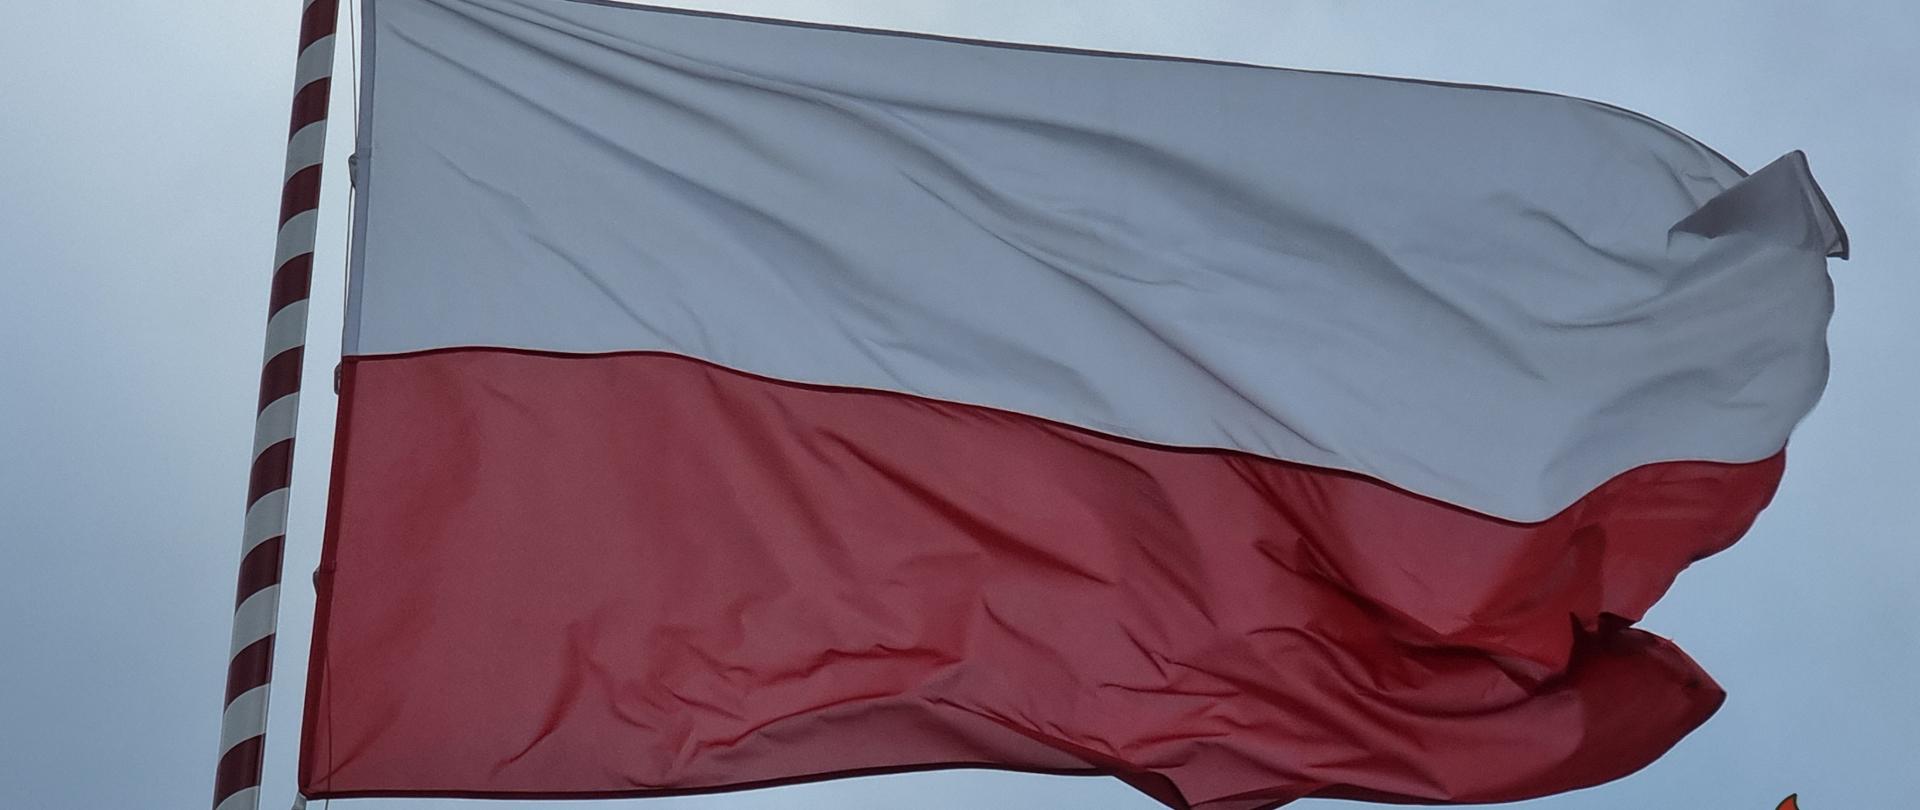 Widoczna na zdjęciu powiewająca na wietrze flagi Polski